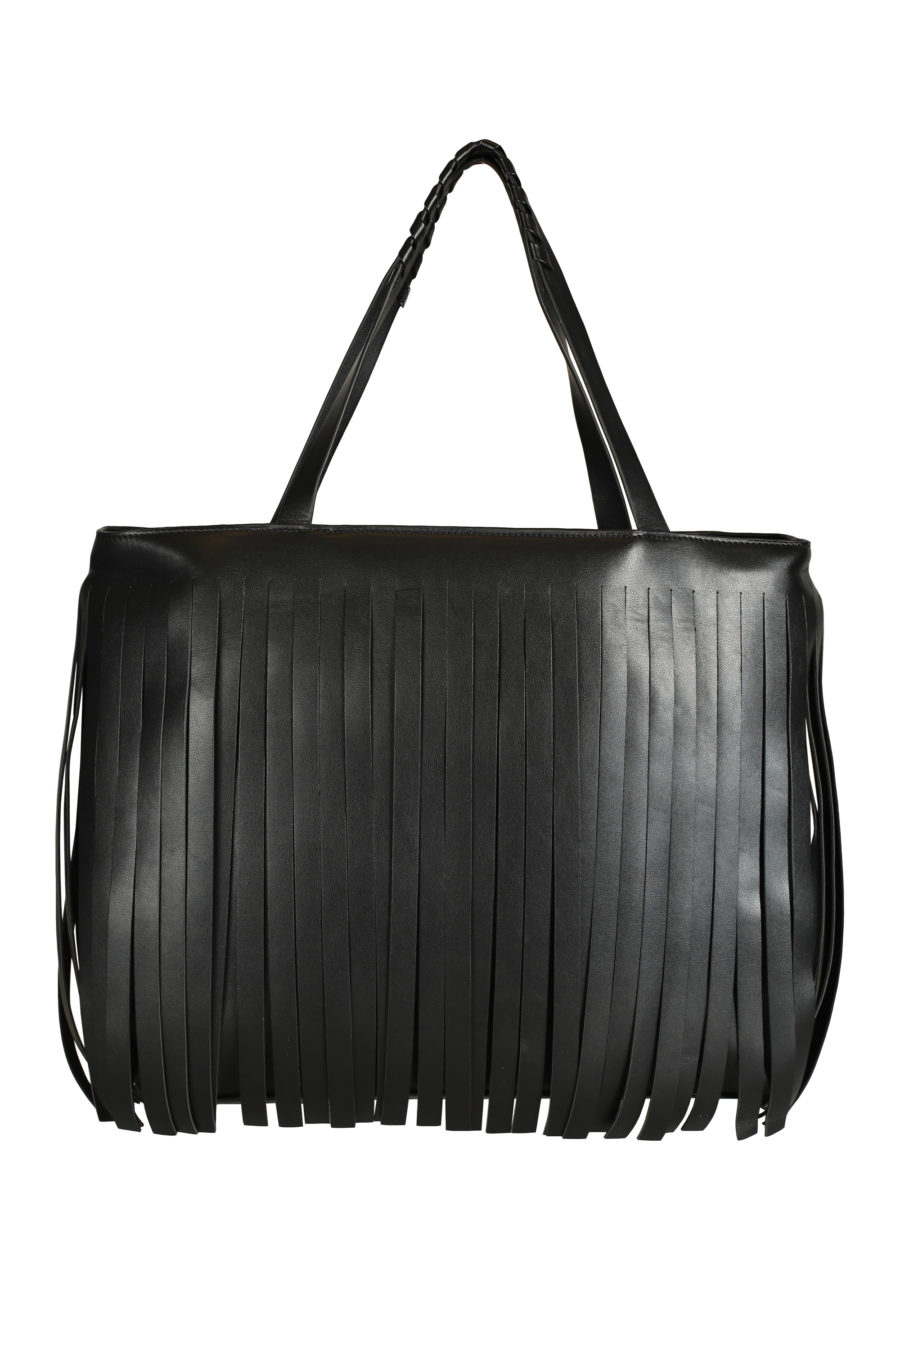 Black "maxi shoper" bag with fringes - IMG 3555